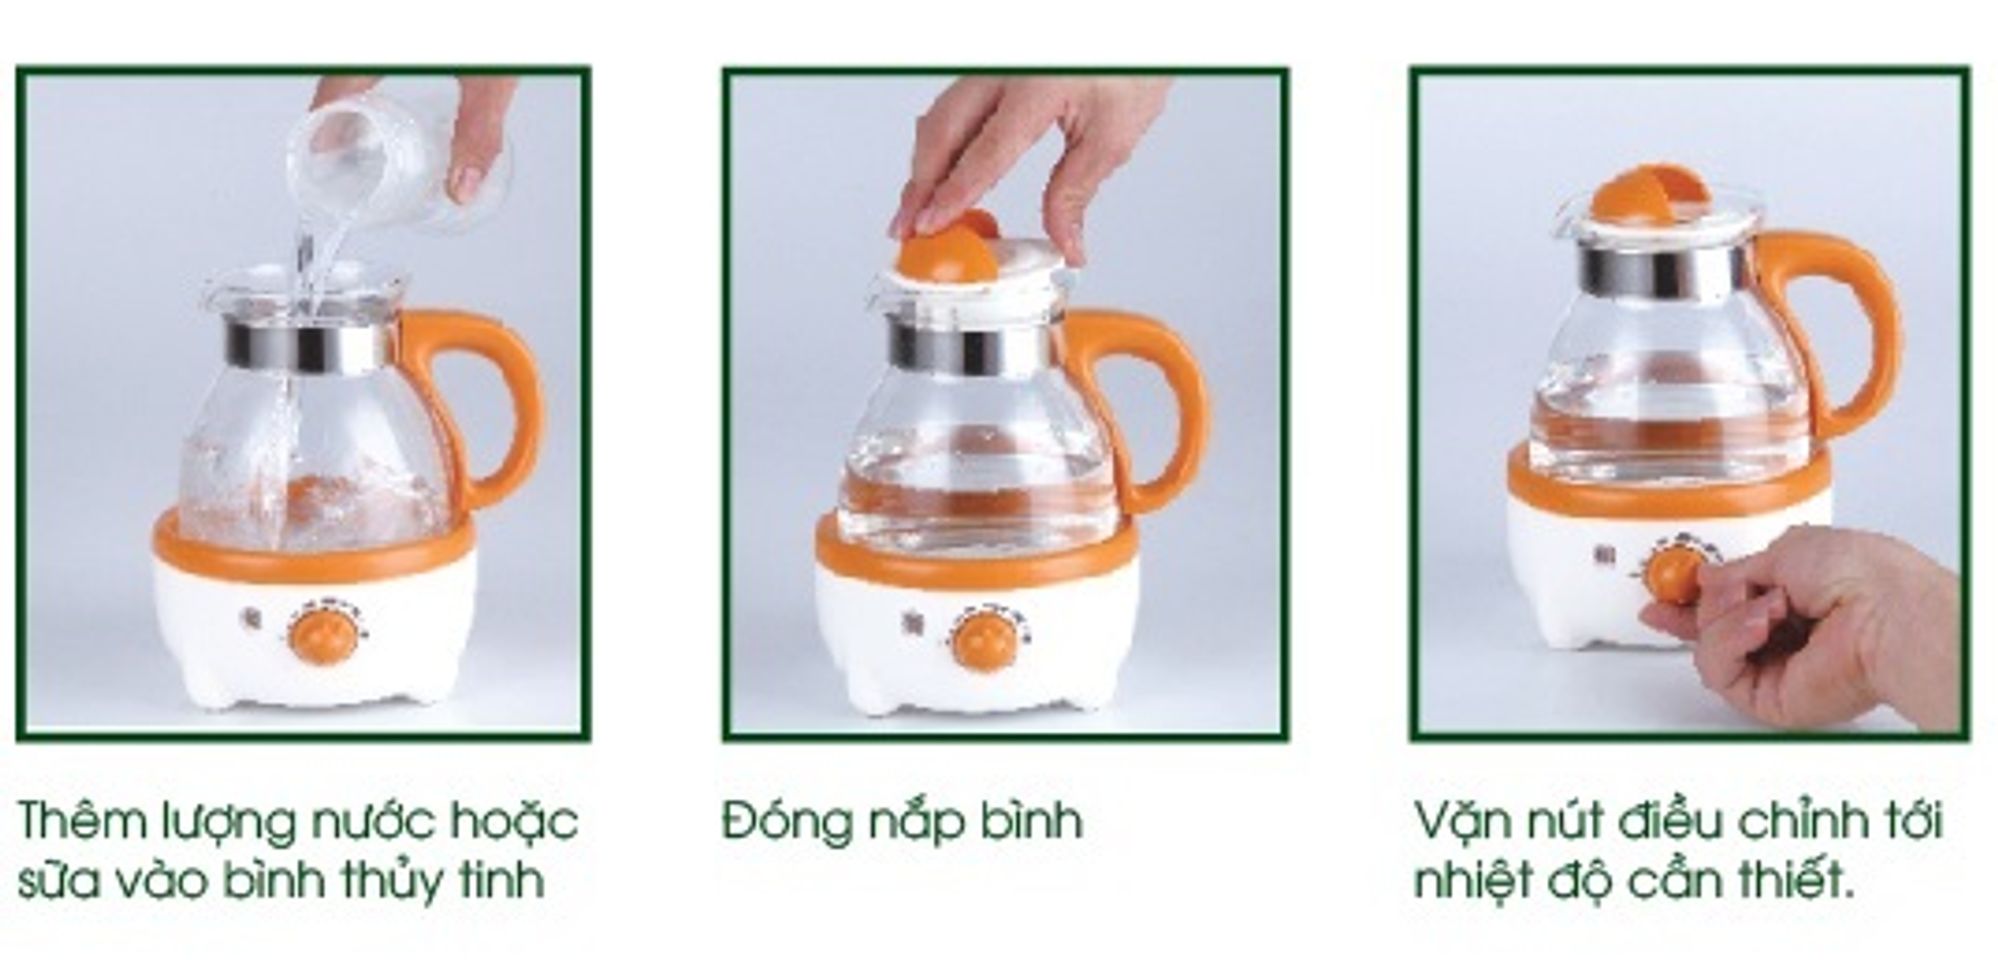 Cách sử dụng máy hâm nước pha sữa rất đơn giản